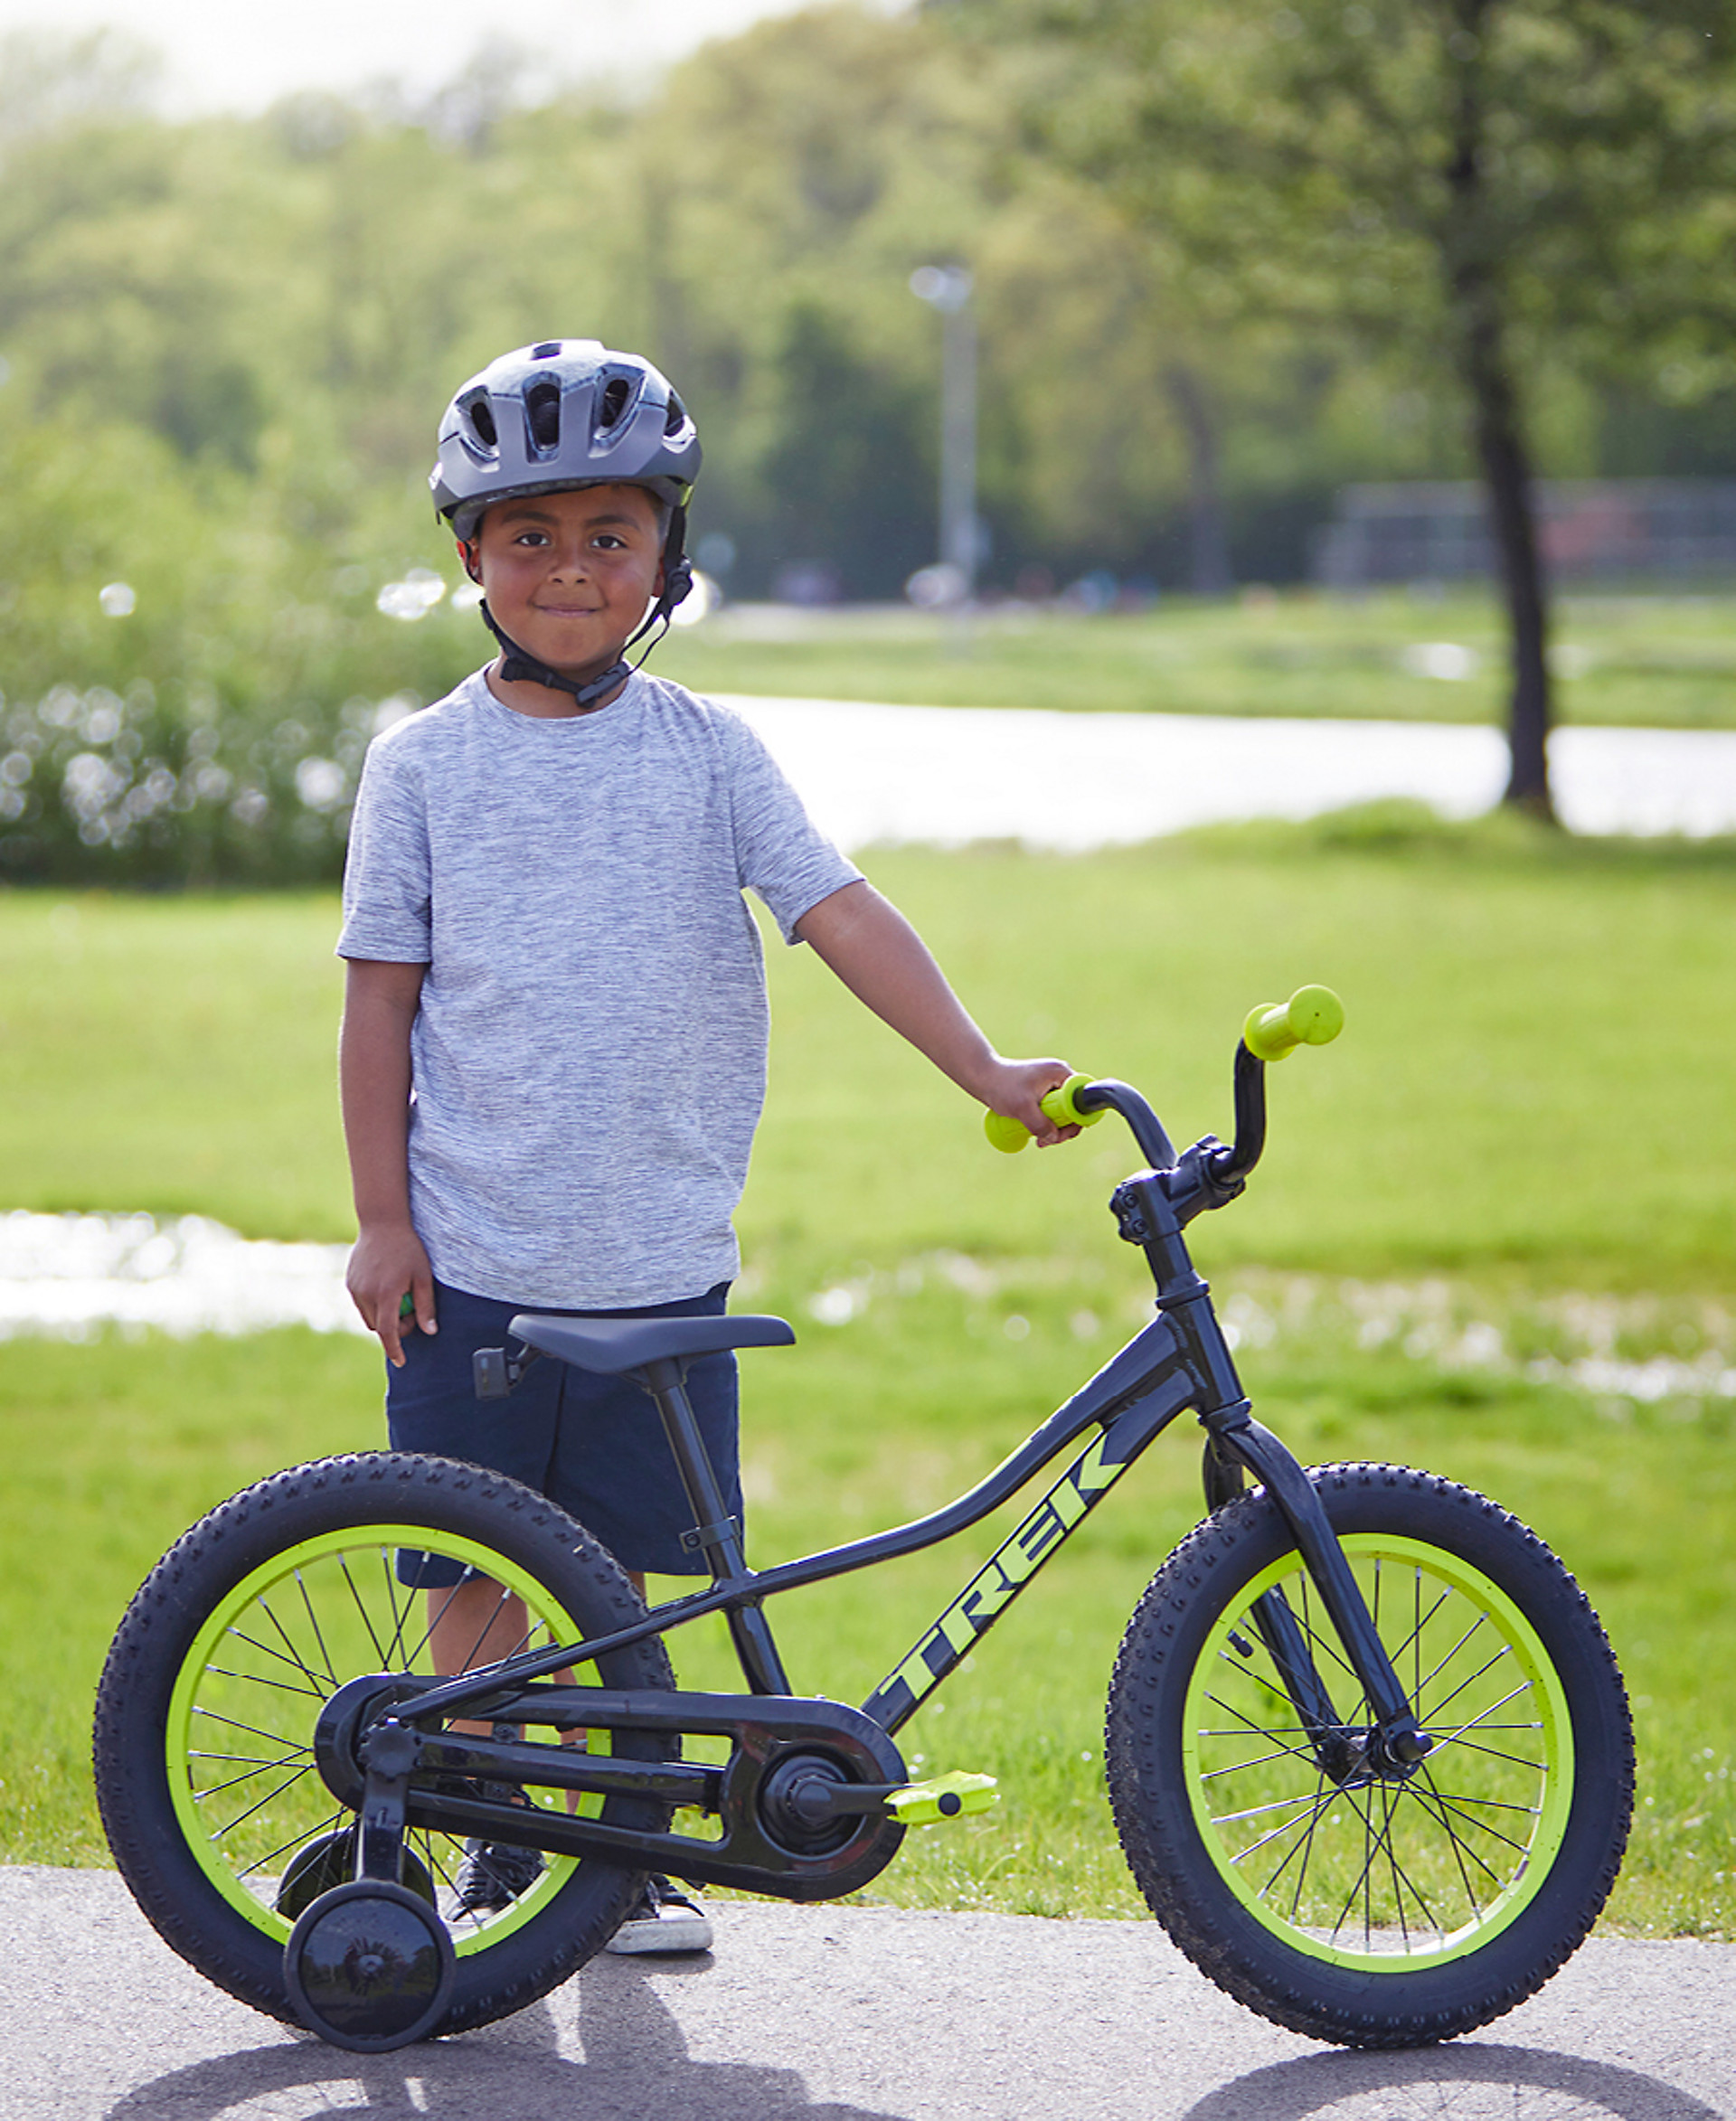 bevestigen Actief Afdeling Kids' bike buyer's guide | Trek Bikes